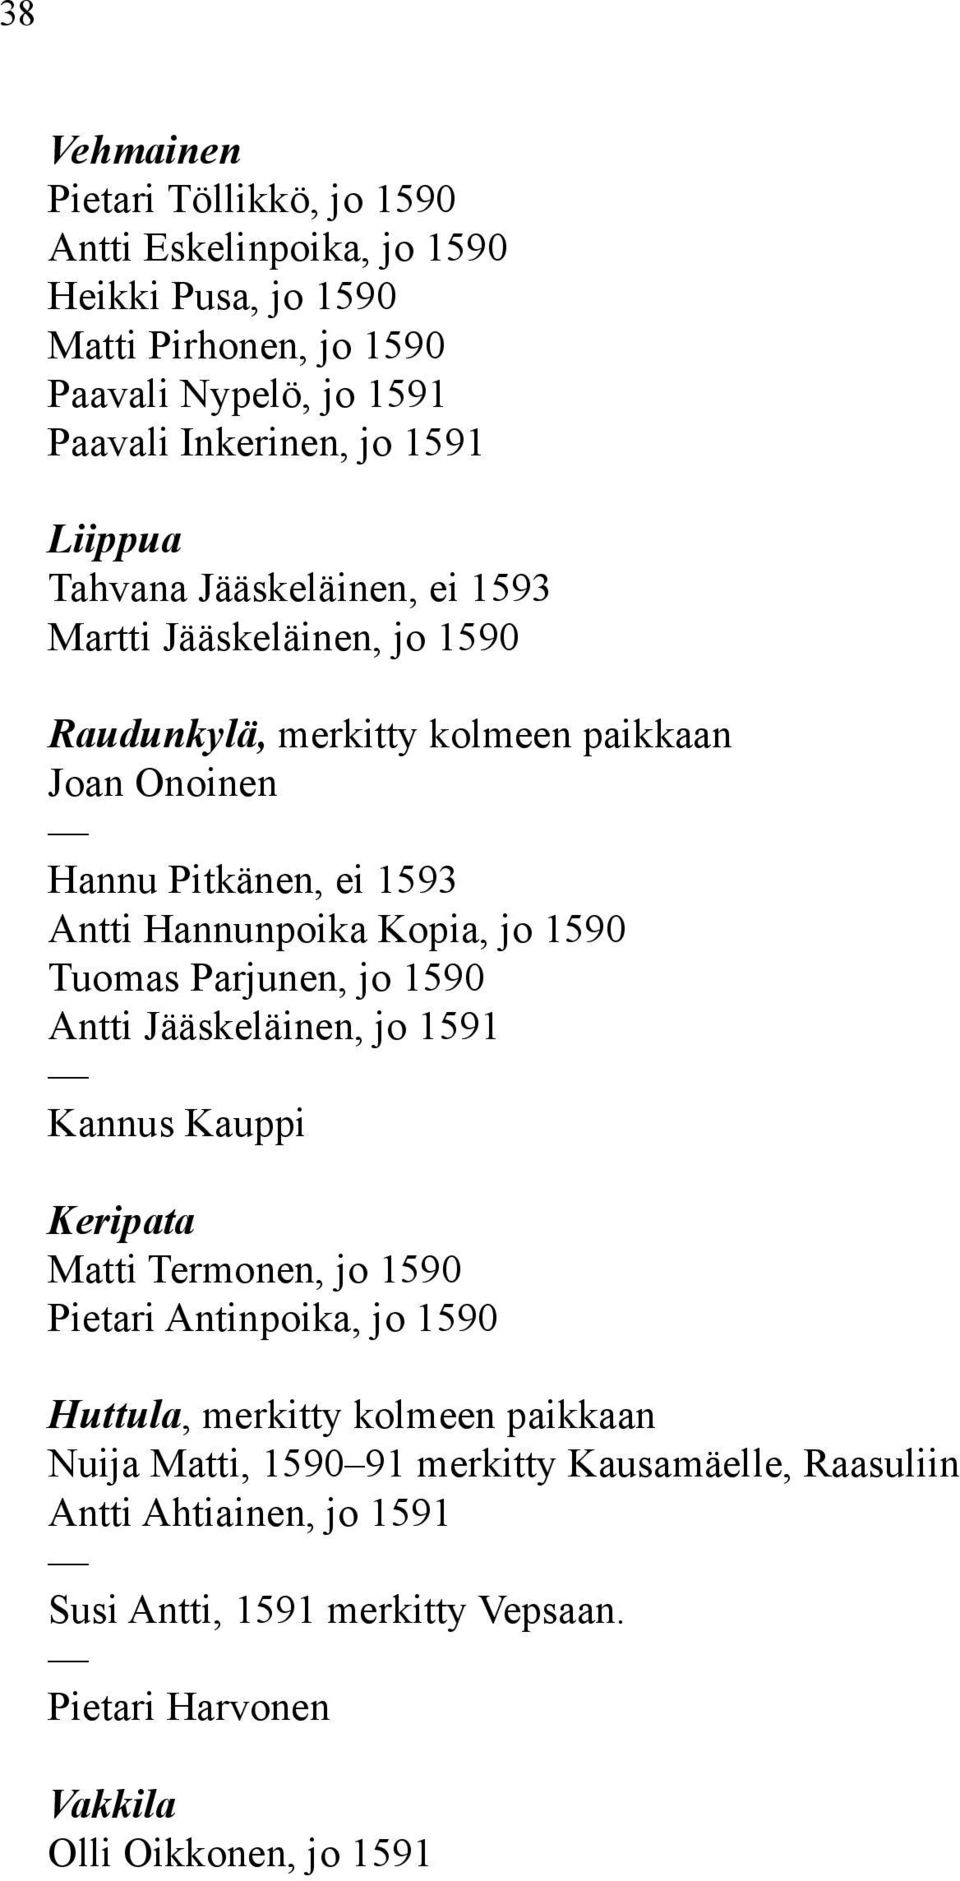 Kopia, jo 1590 Tuomas Parjunen, jo 1590 Antti Jääskeläinen, jo 1591 Kannus Kauppi Keripata Matti Termonen, jo 1590 Pietari Antinpoika, jo 1590 Huttula, merkitty